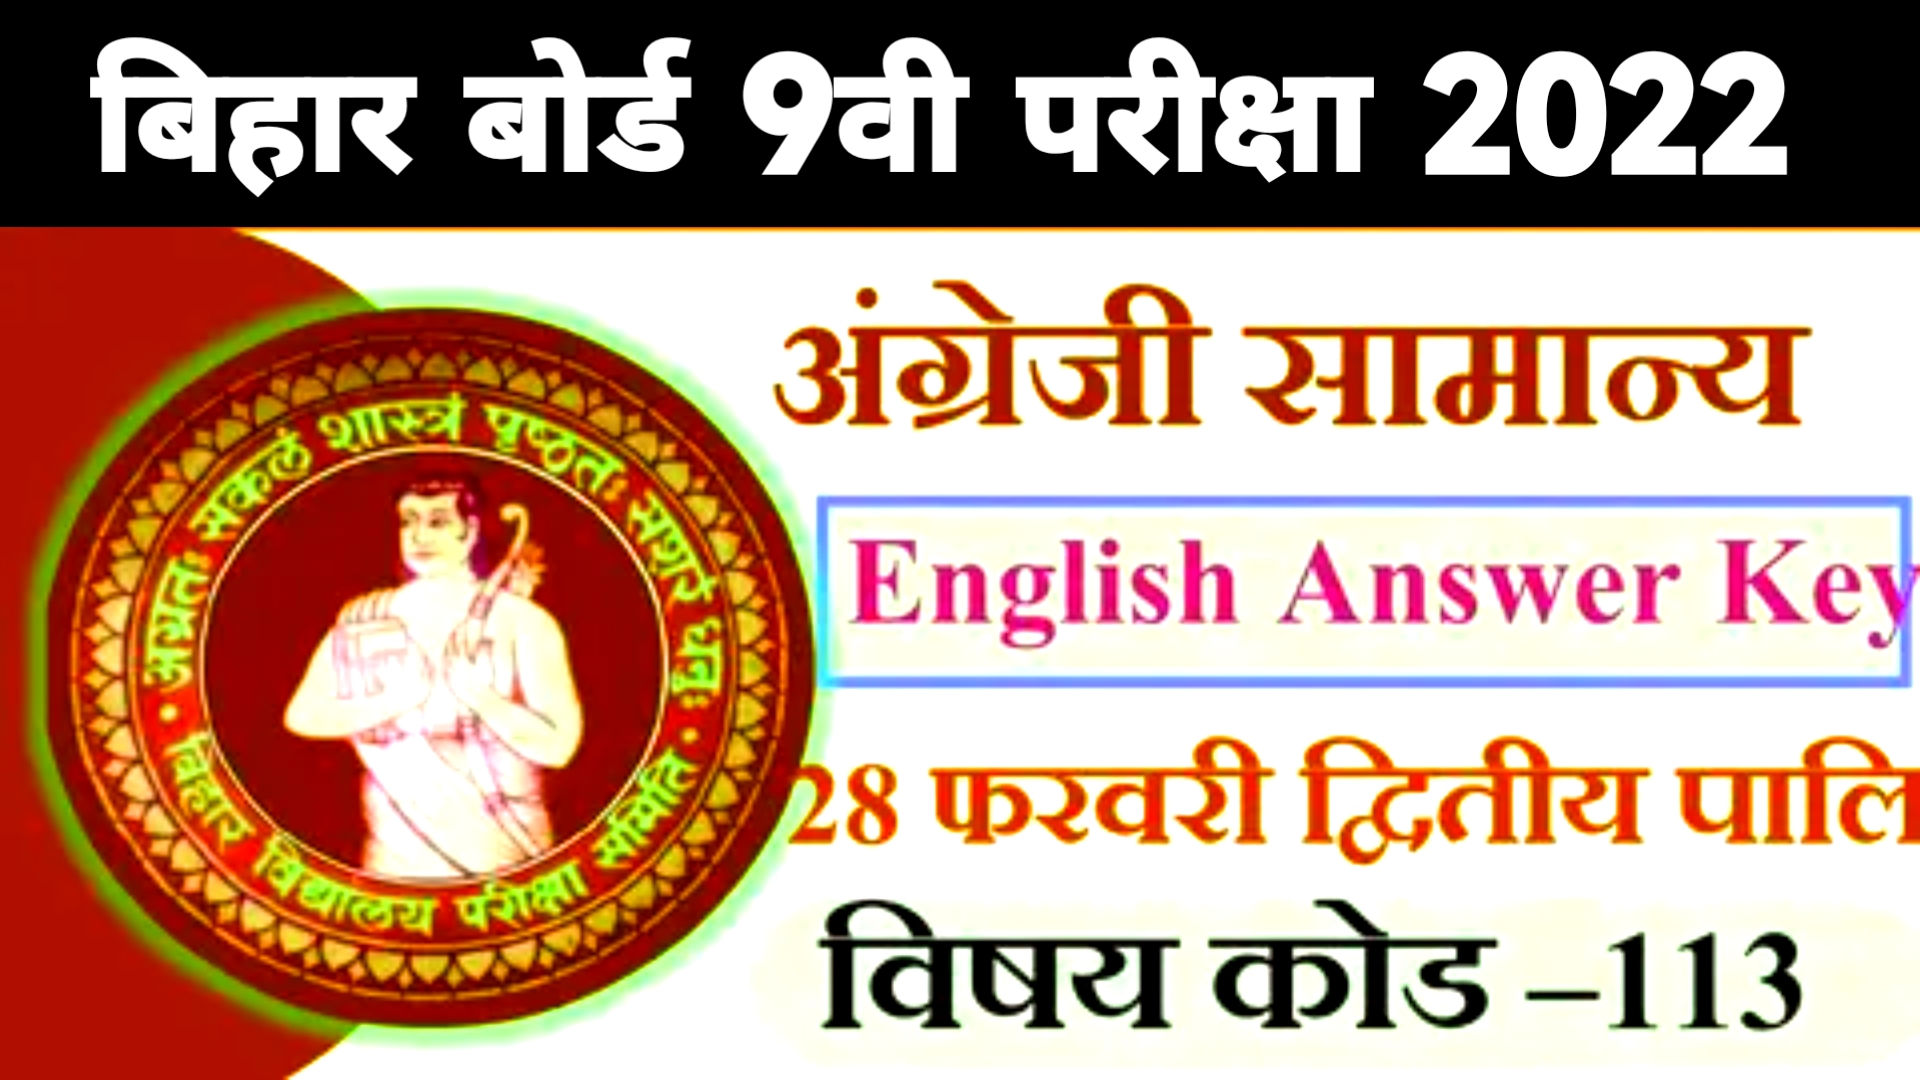 Bihar Board 9th English Answer Key 2022 Pdf | Bihar Board 9th English Question 2022